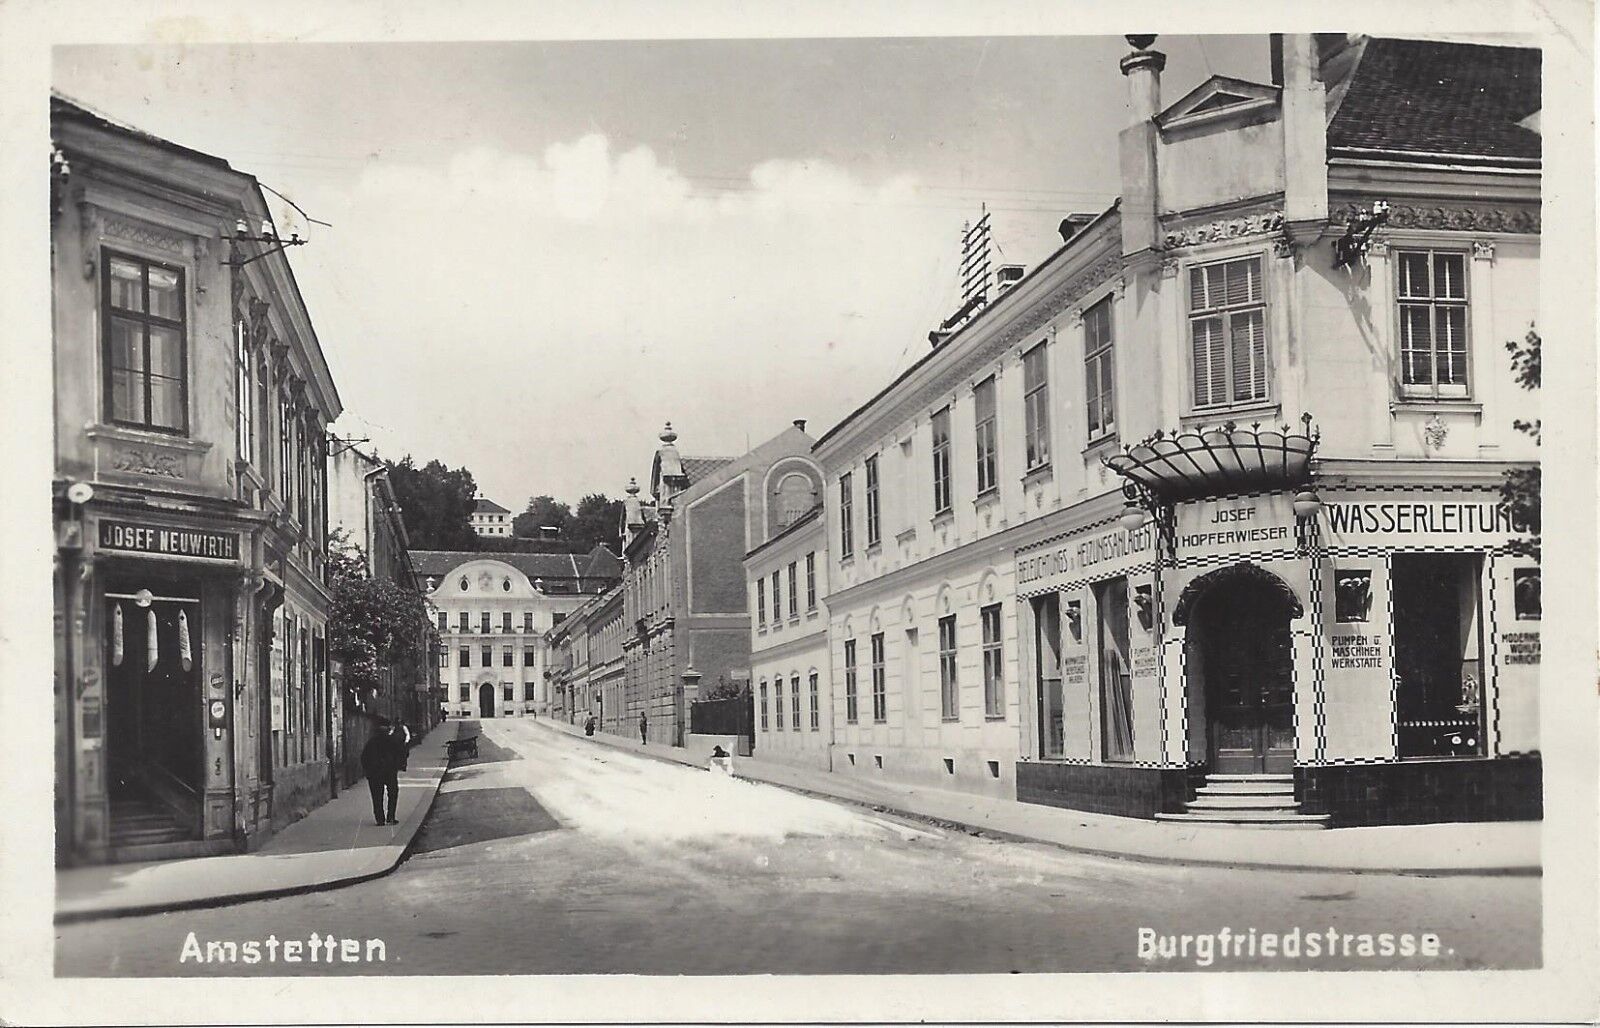 NÖ: Gruß a. Amstetten Burgfriedstrasse 1938 Fotokarte Hopferwieser Wasserleitung